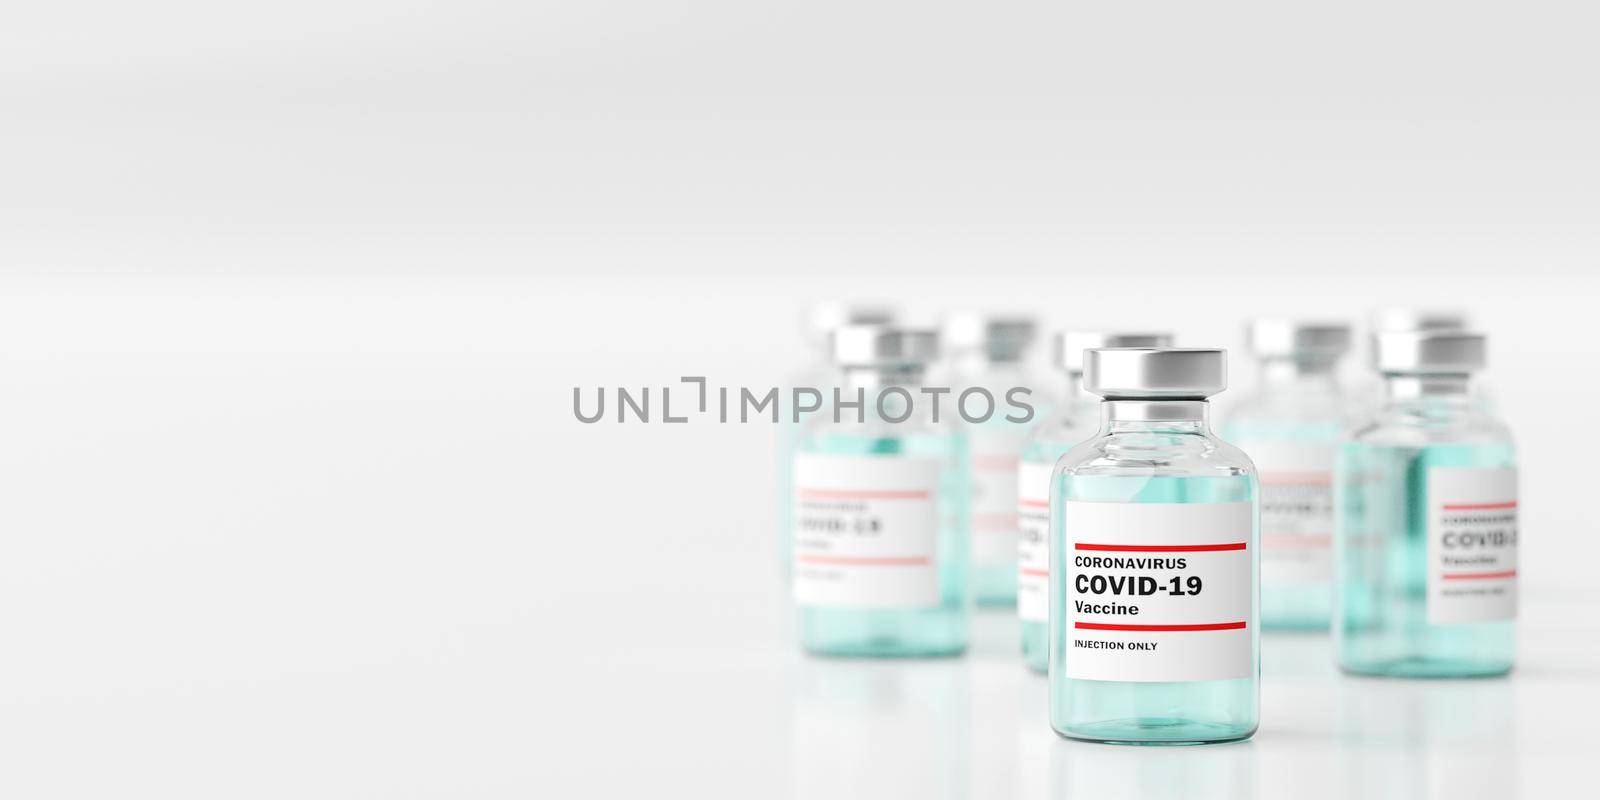 Medical concept, Bottle vial of 2019-ncov Covid-19 Corona Virus, 3d illustration